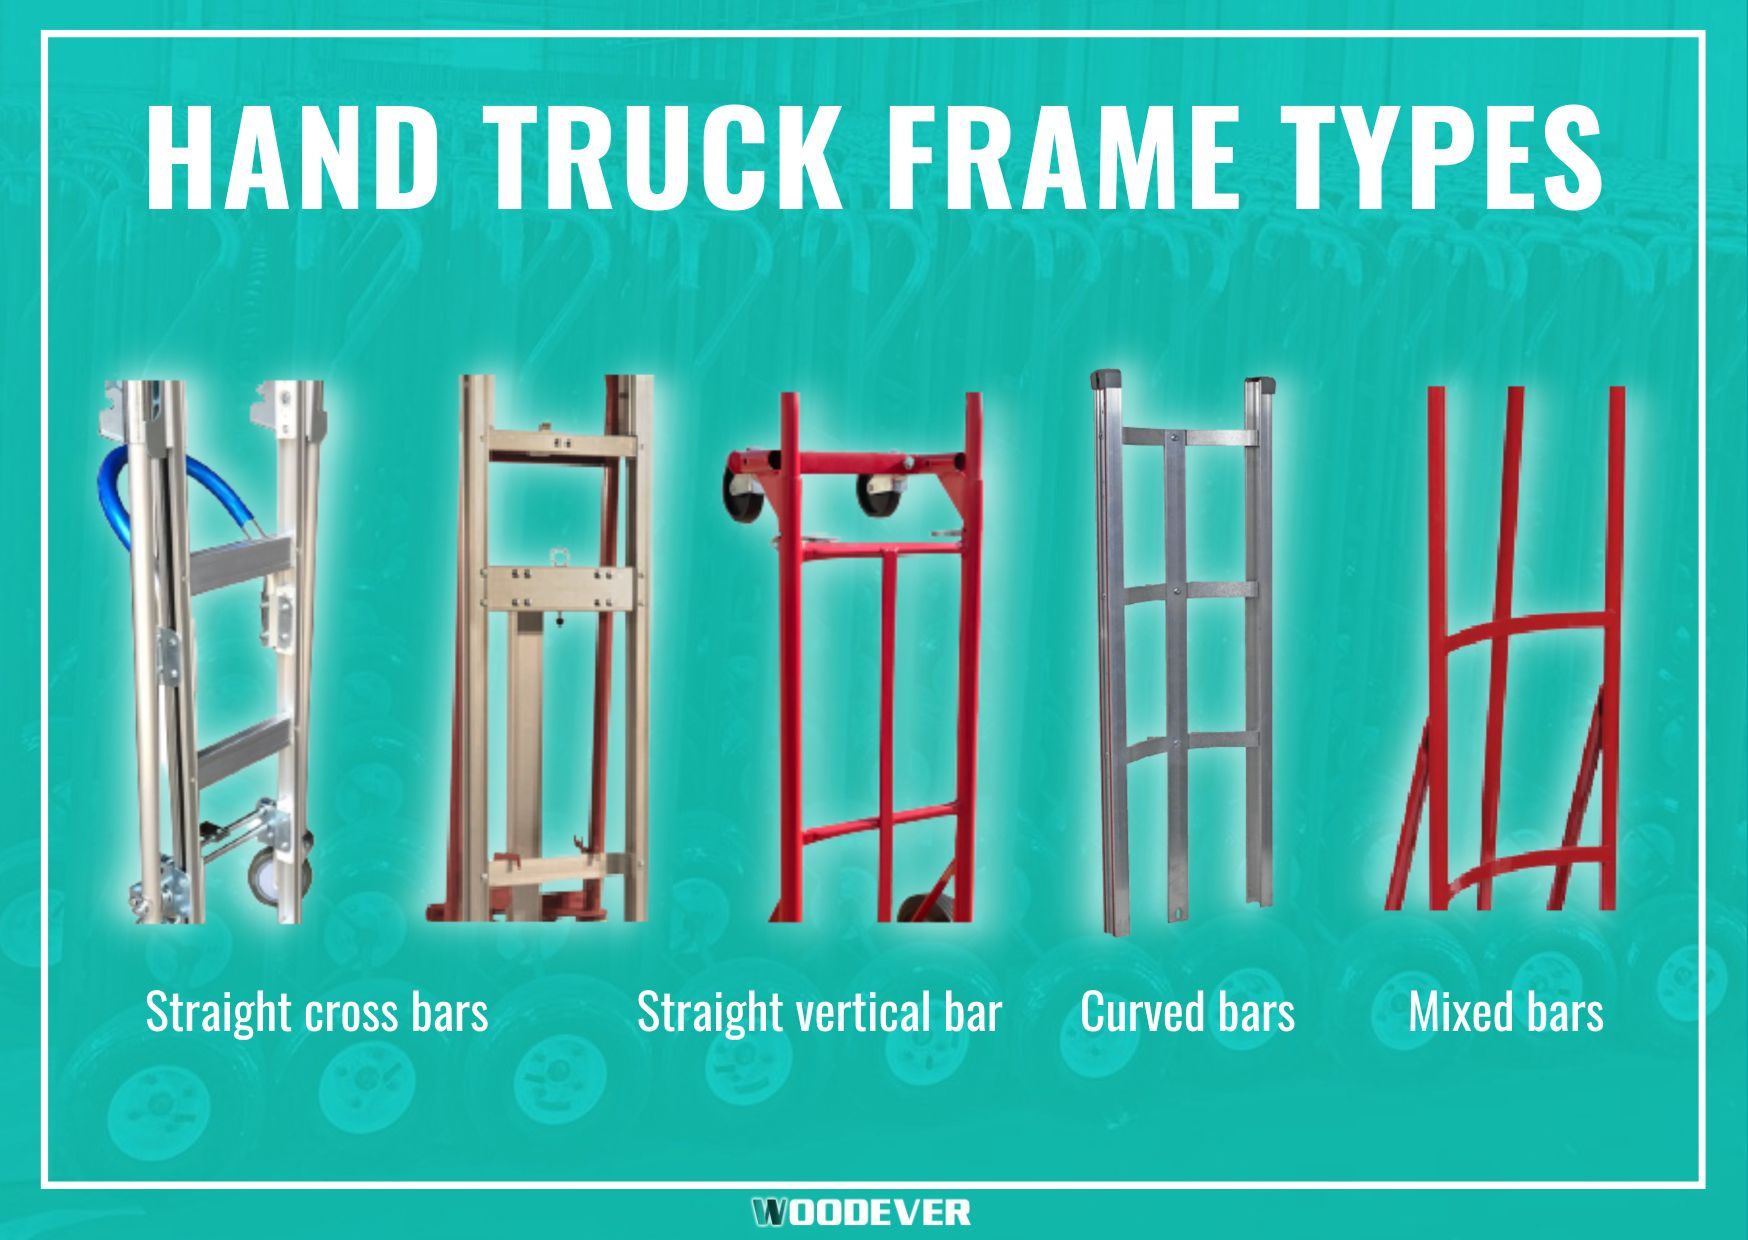 Types courants de cadre pour chariot à main, chariot de manutention : cadre en acier, cadre en aluminium, cadre courbé.